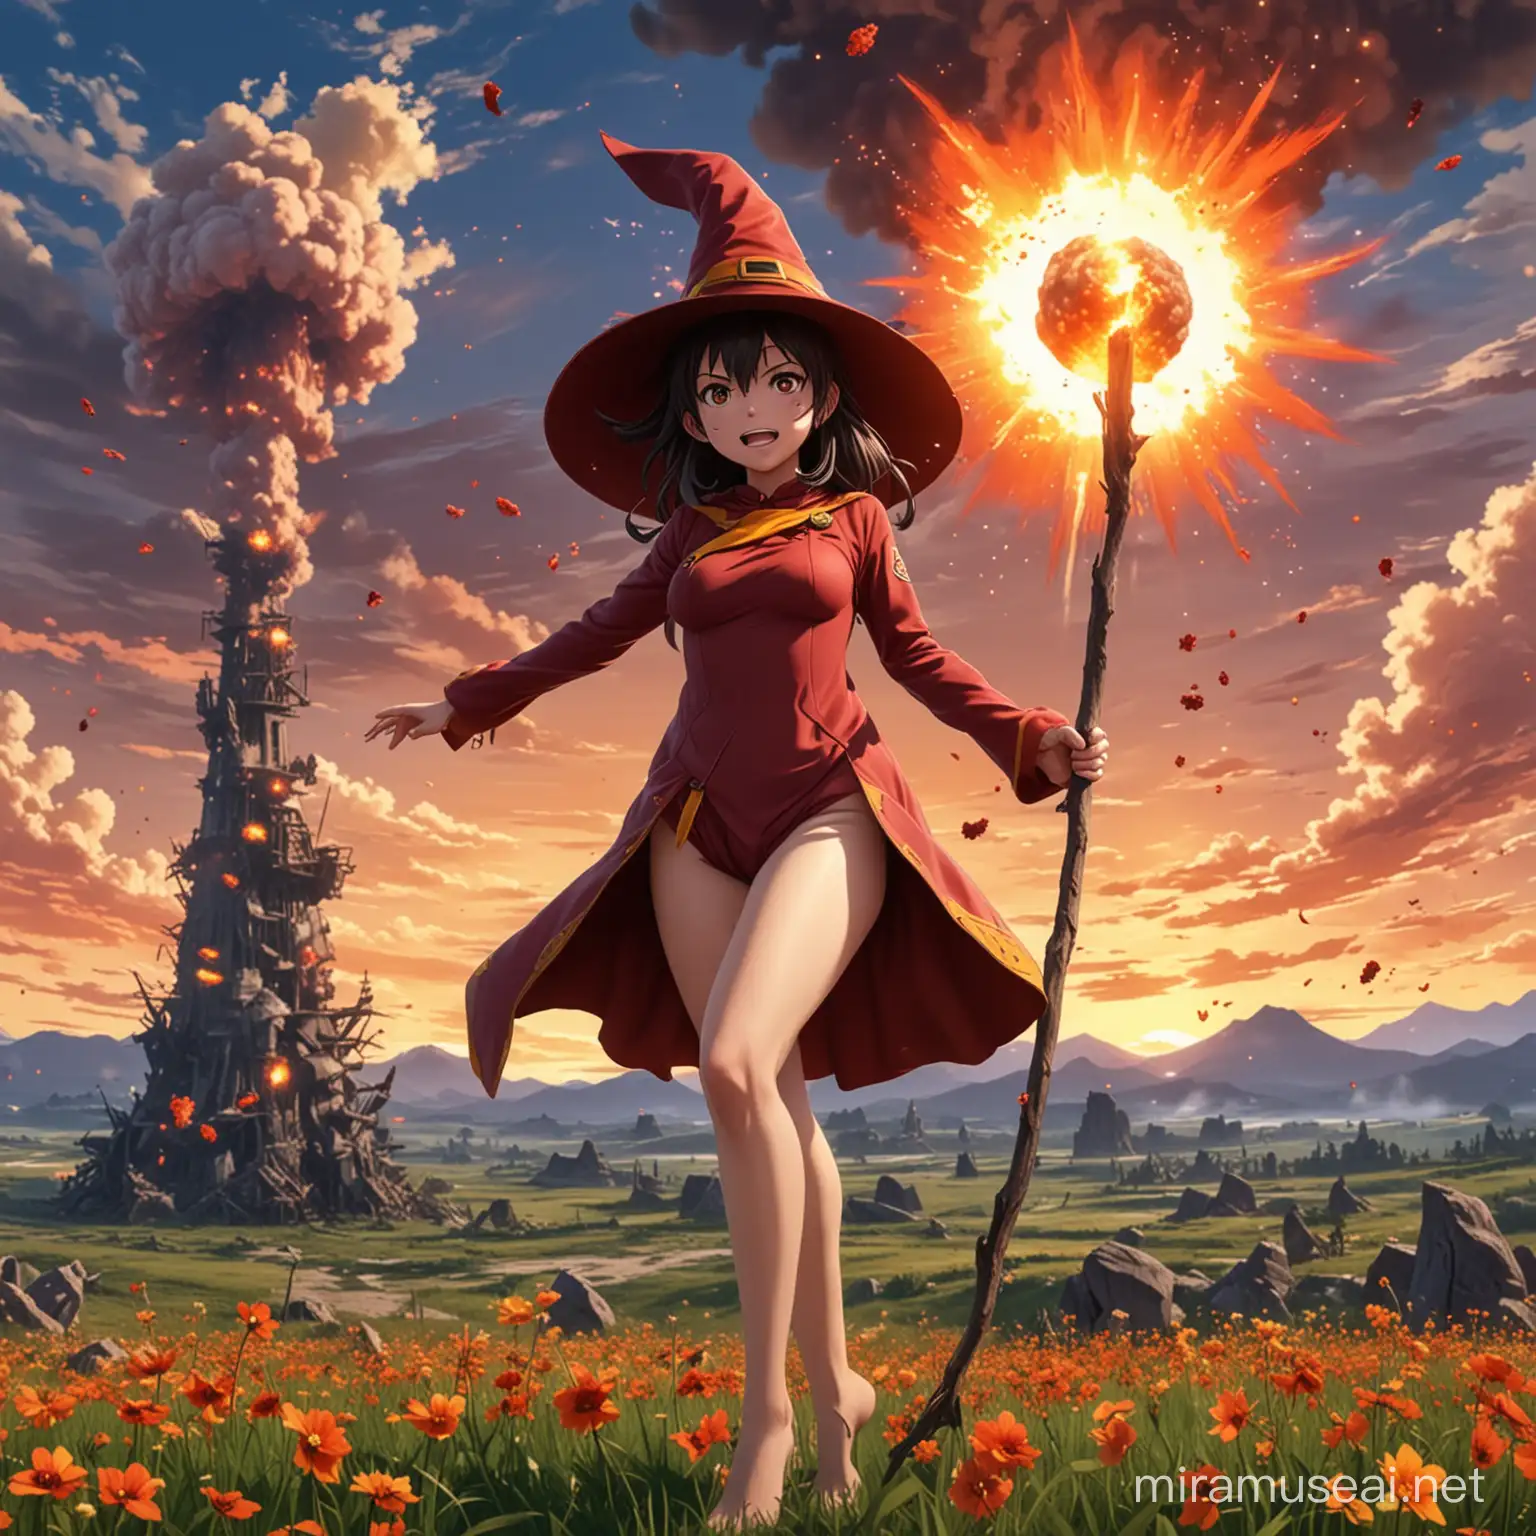 čarodějka Megumin stojí na kvetoucí jarní louce a v pozadí za ní je obrovský jaderný výbuch. Megumin se tváří překvapeně. je nahá a má je hůl a čarodějnický klobouk. anime vzhled.